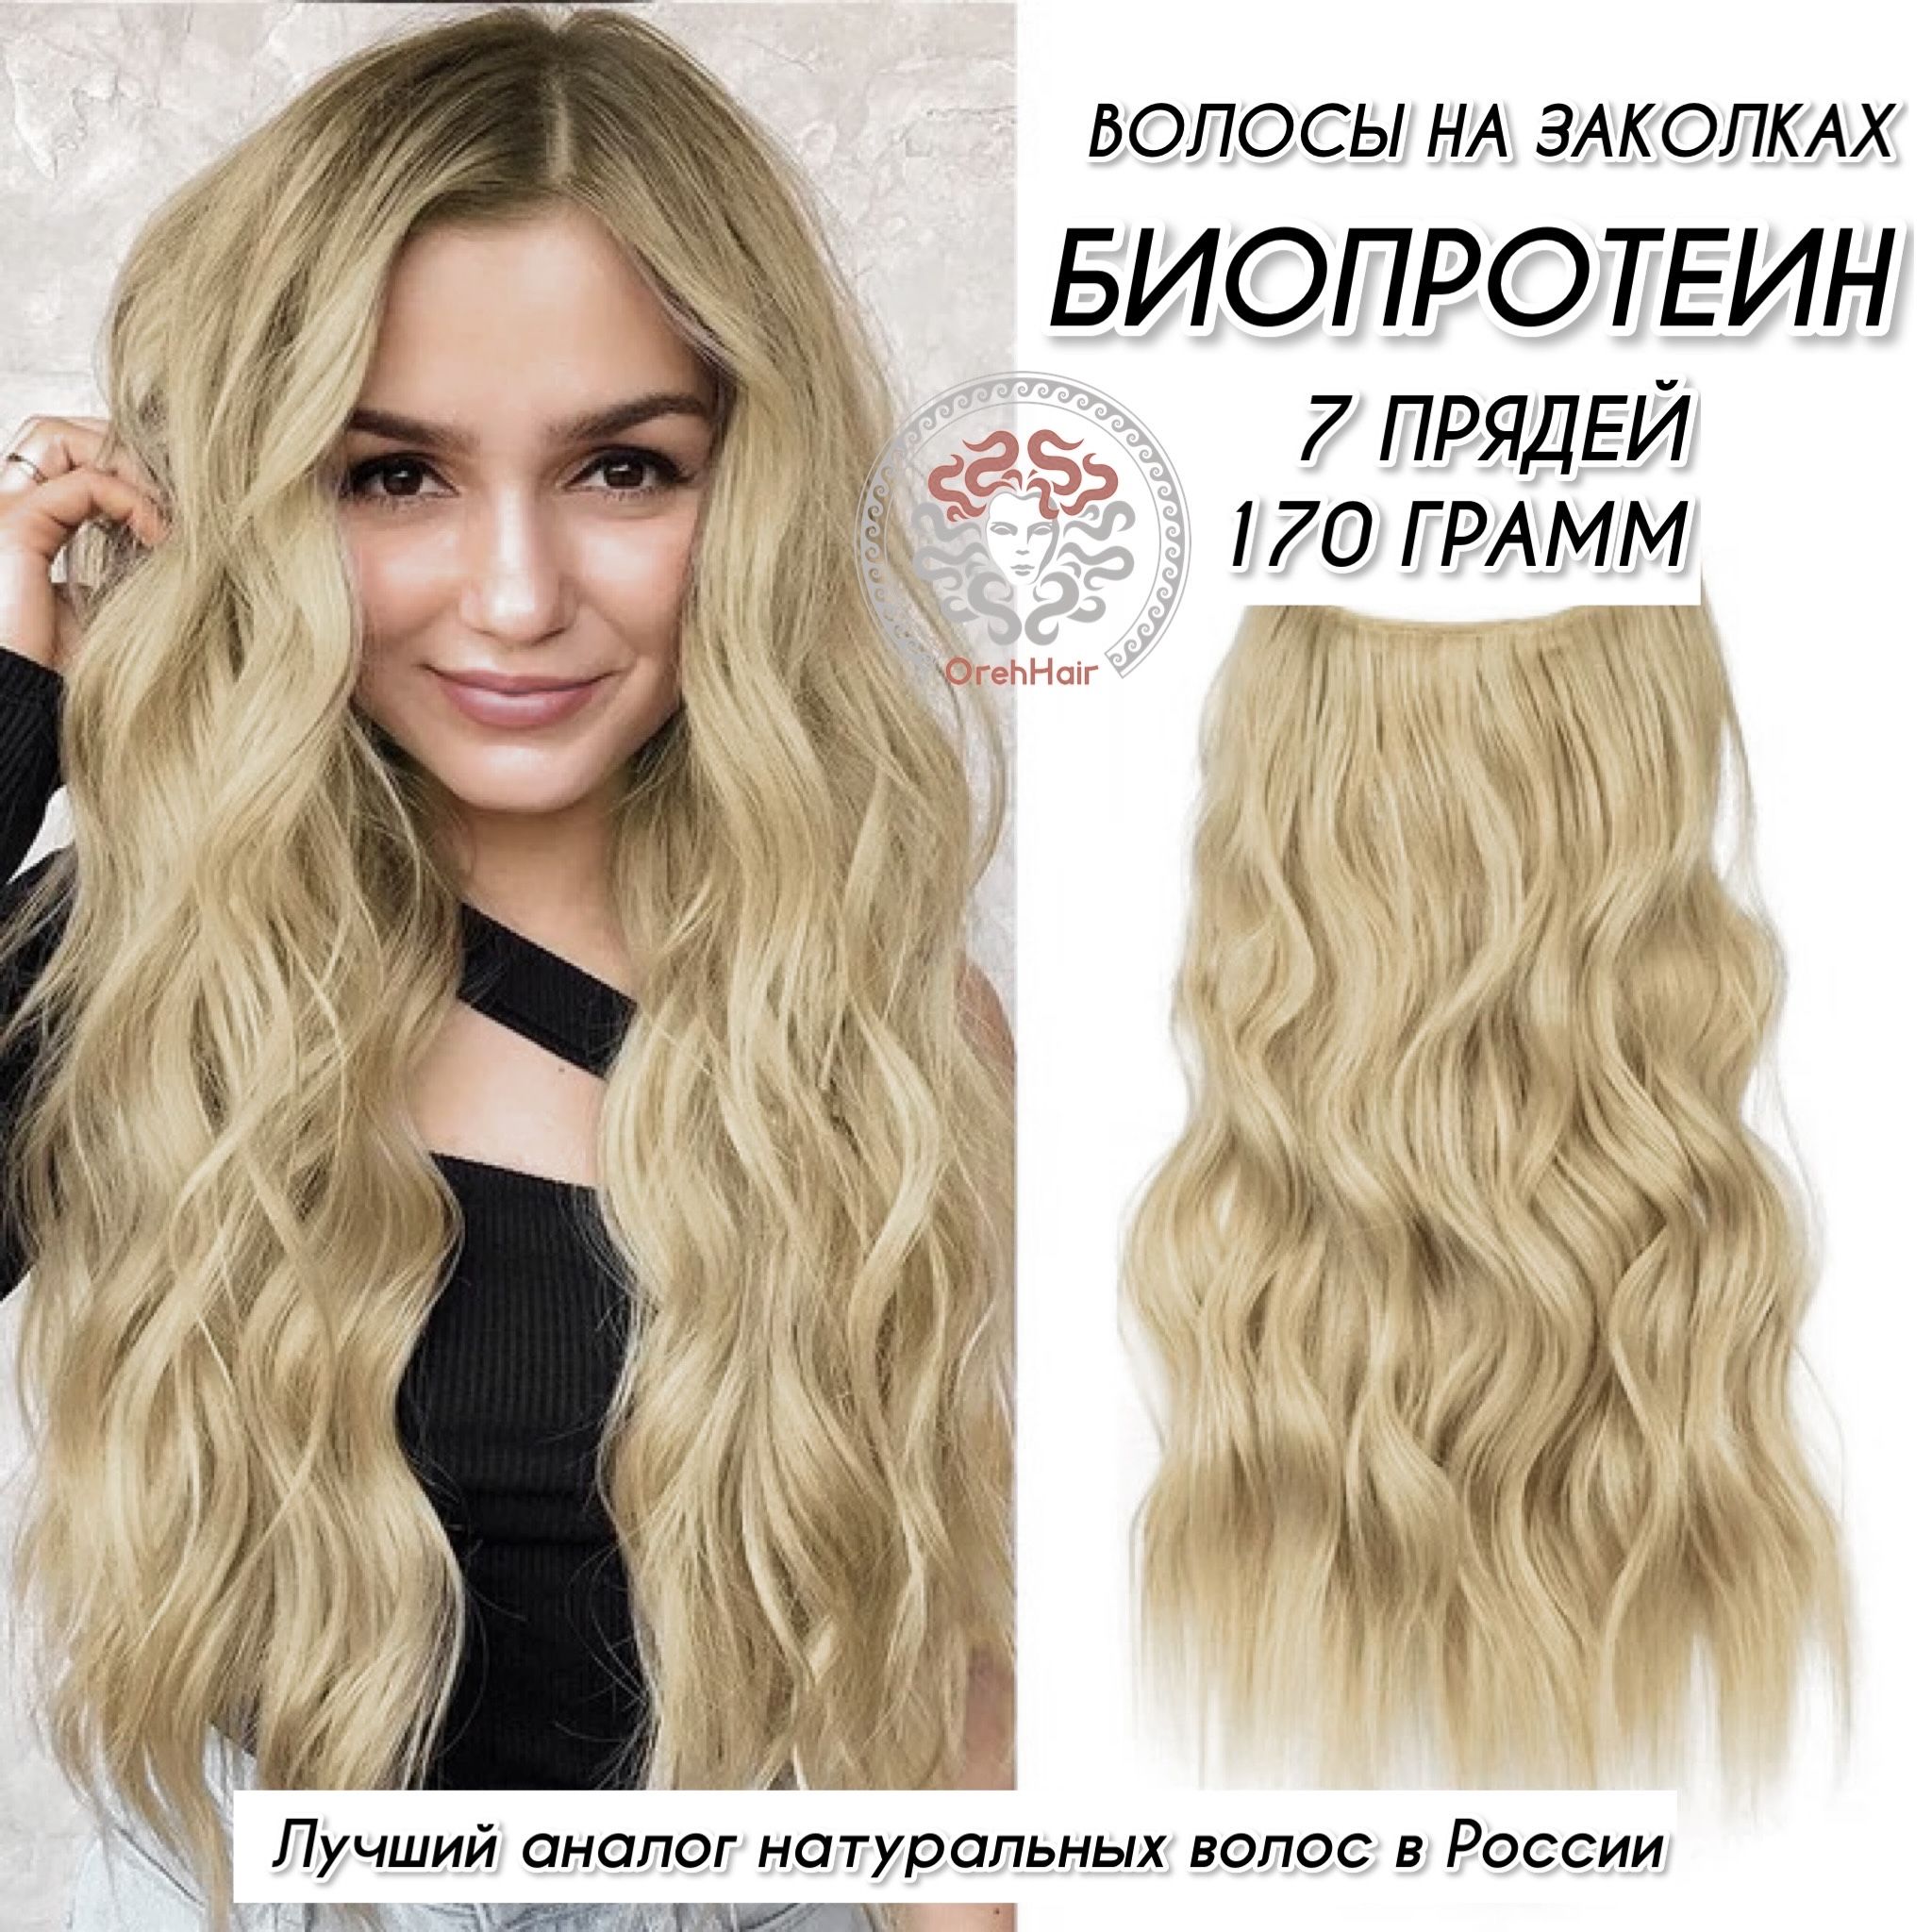 Сложное окрашивание волос в СПб | Окрашивание волос в салоне в Санкт Петербурге по приятной цене